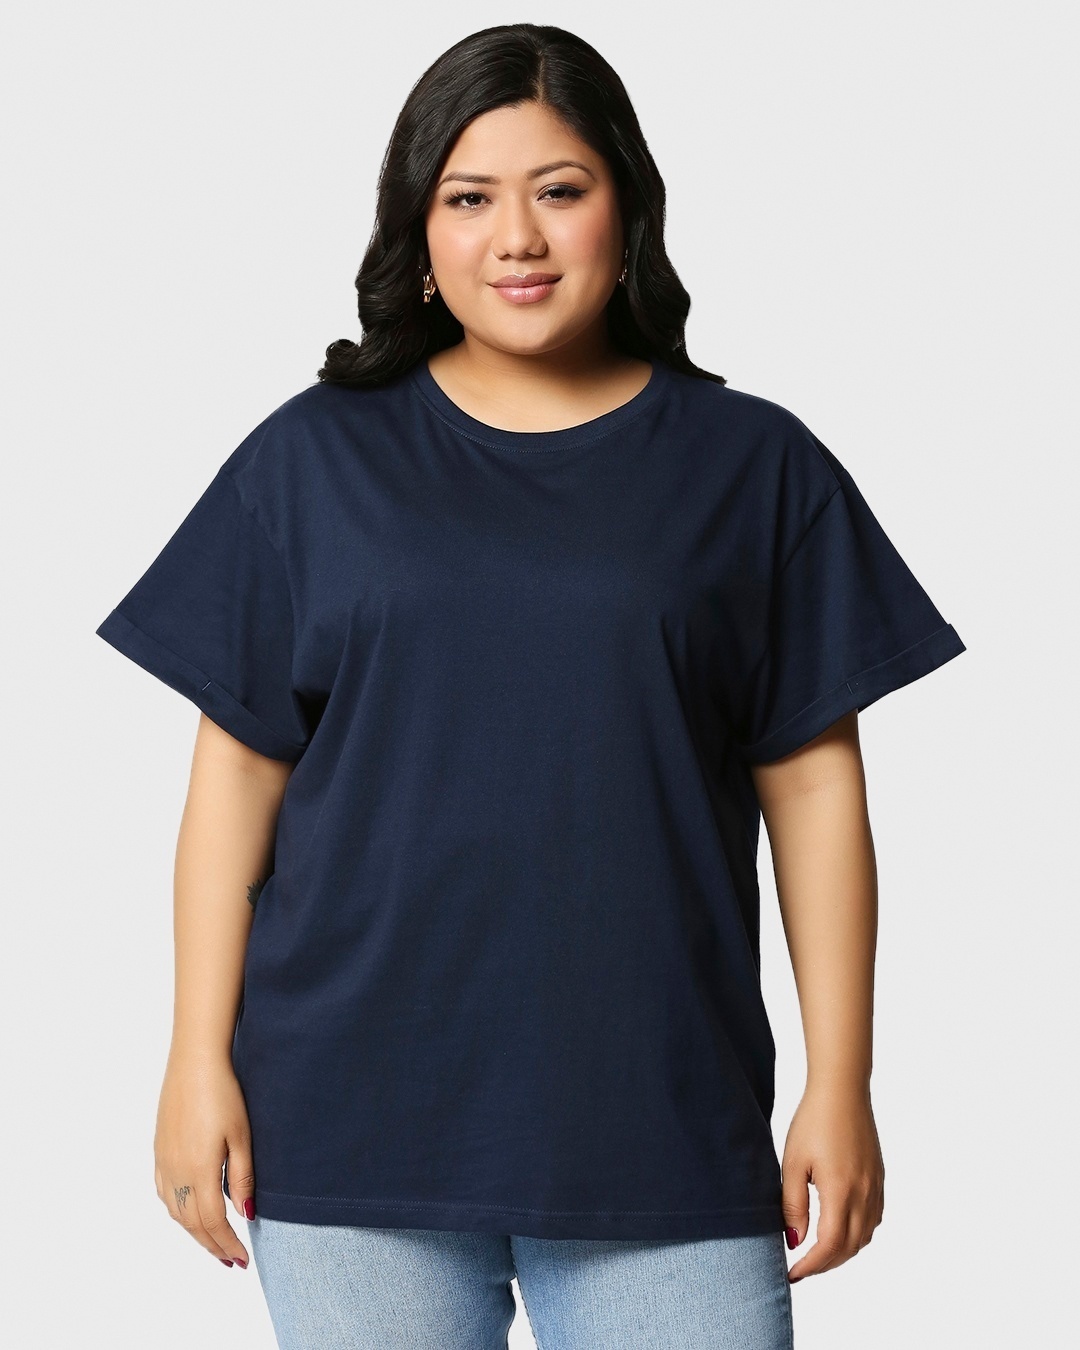 Shop Women's Black & Blue Plus Size Boyfriend T-shirt (Pack of 2)-Design